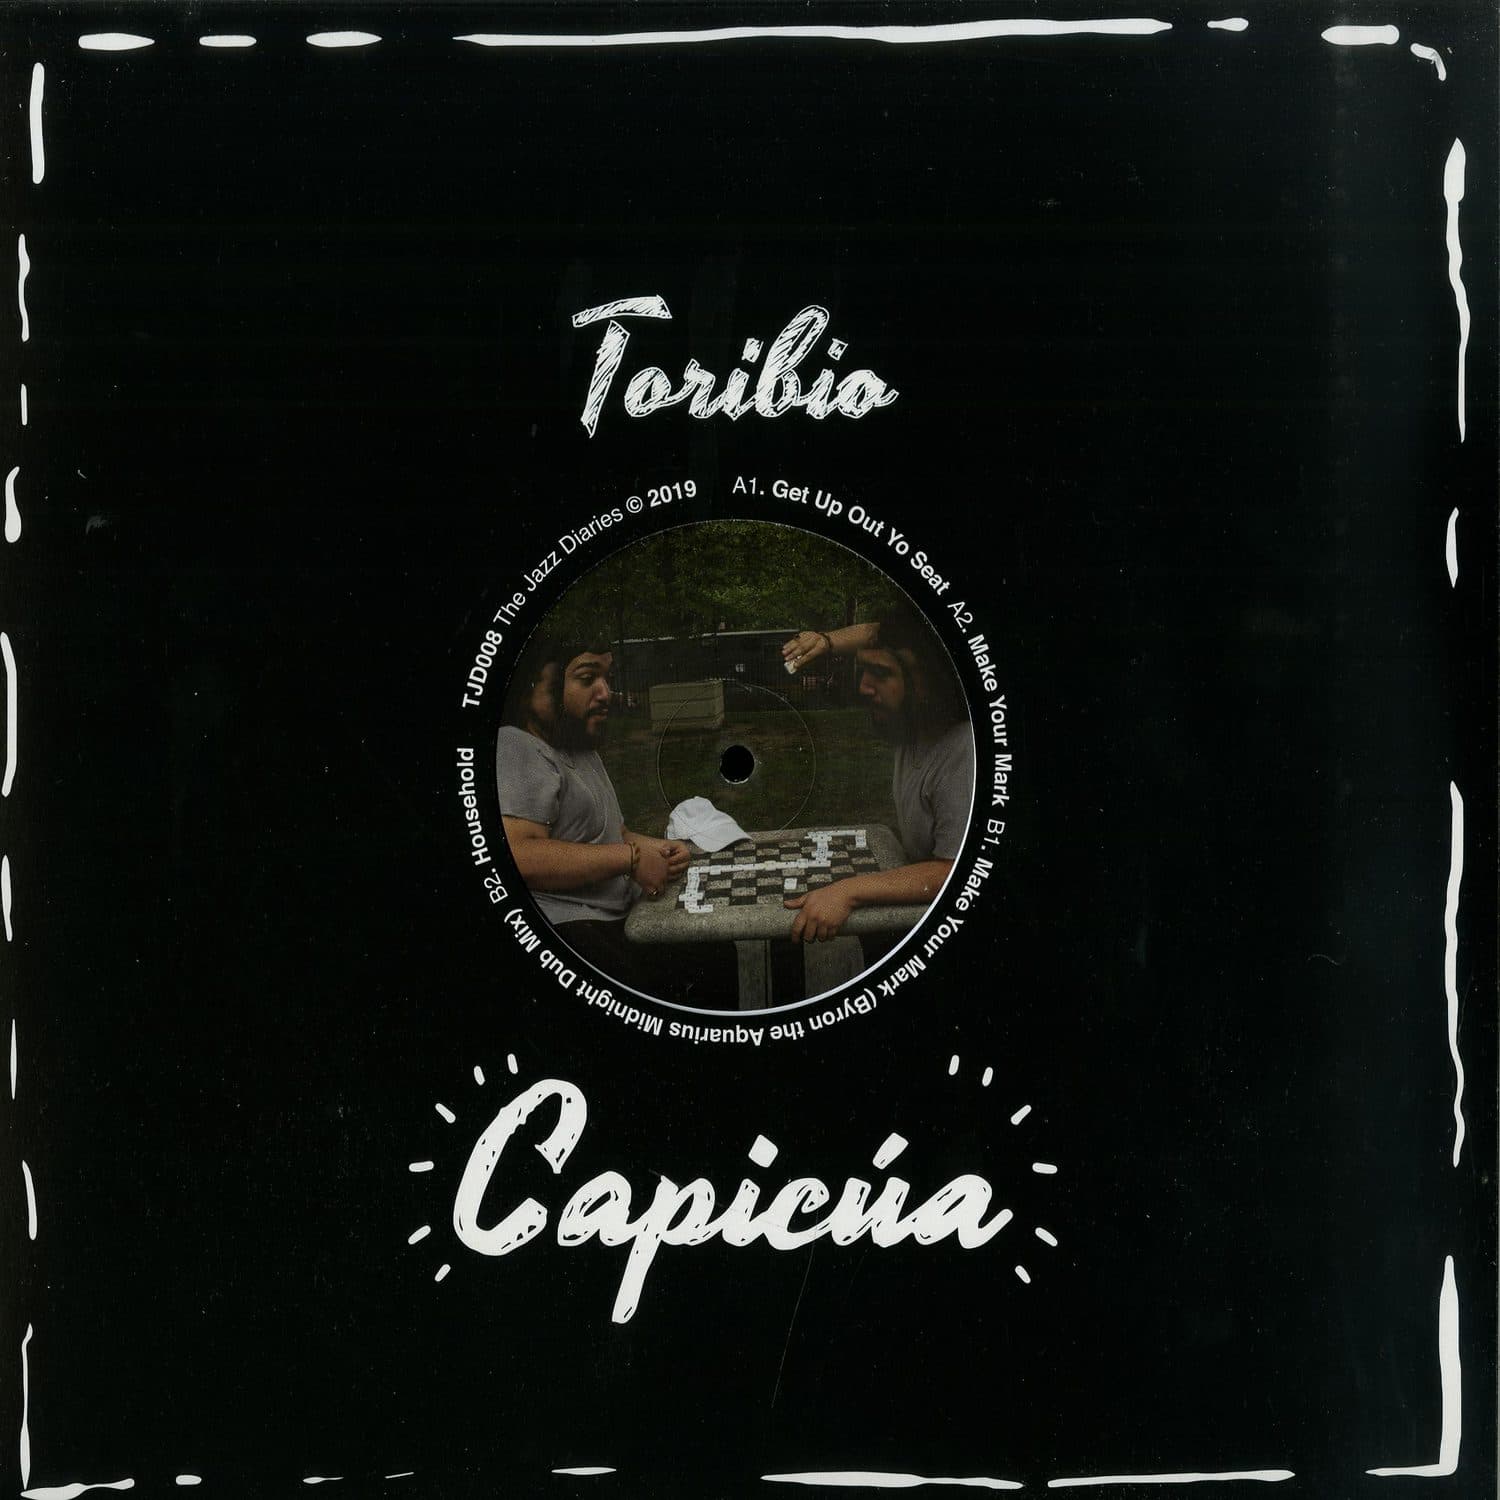 Toribio - CAPICUA! EP 